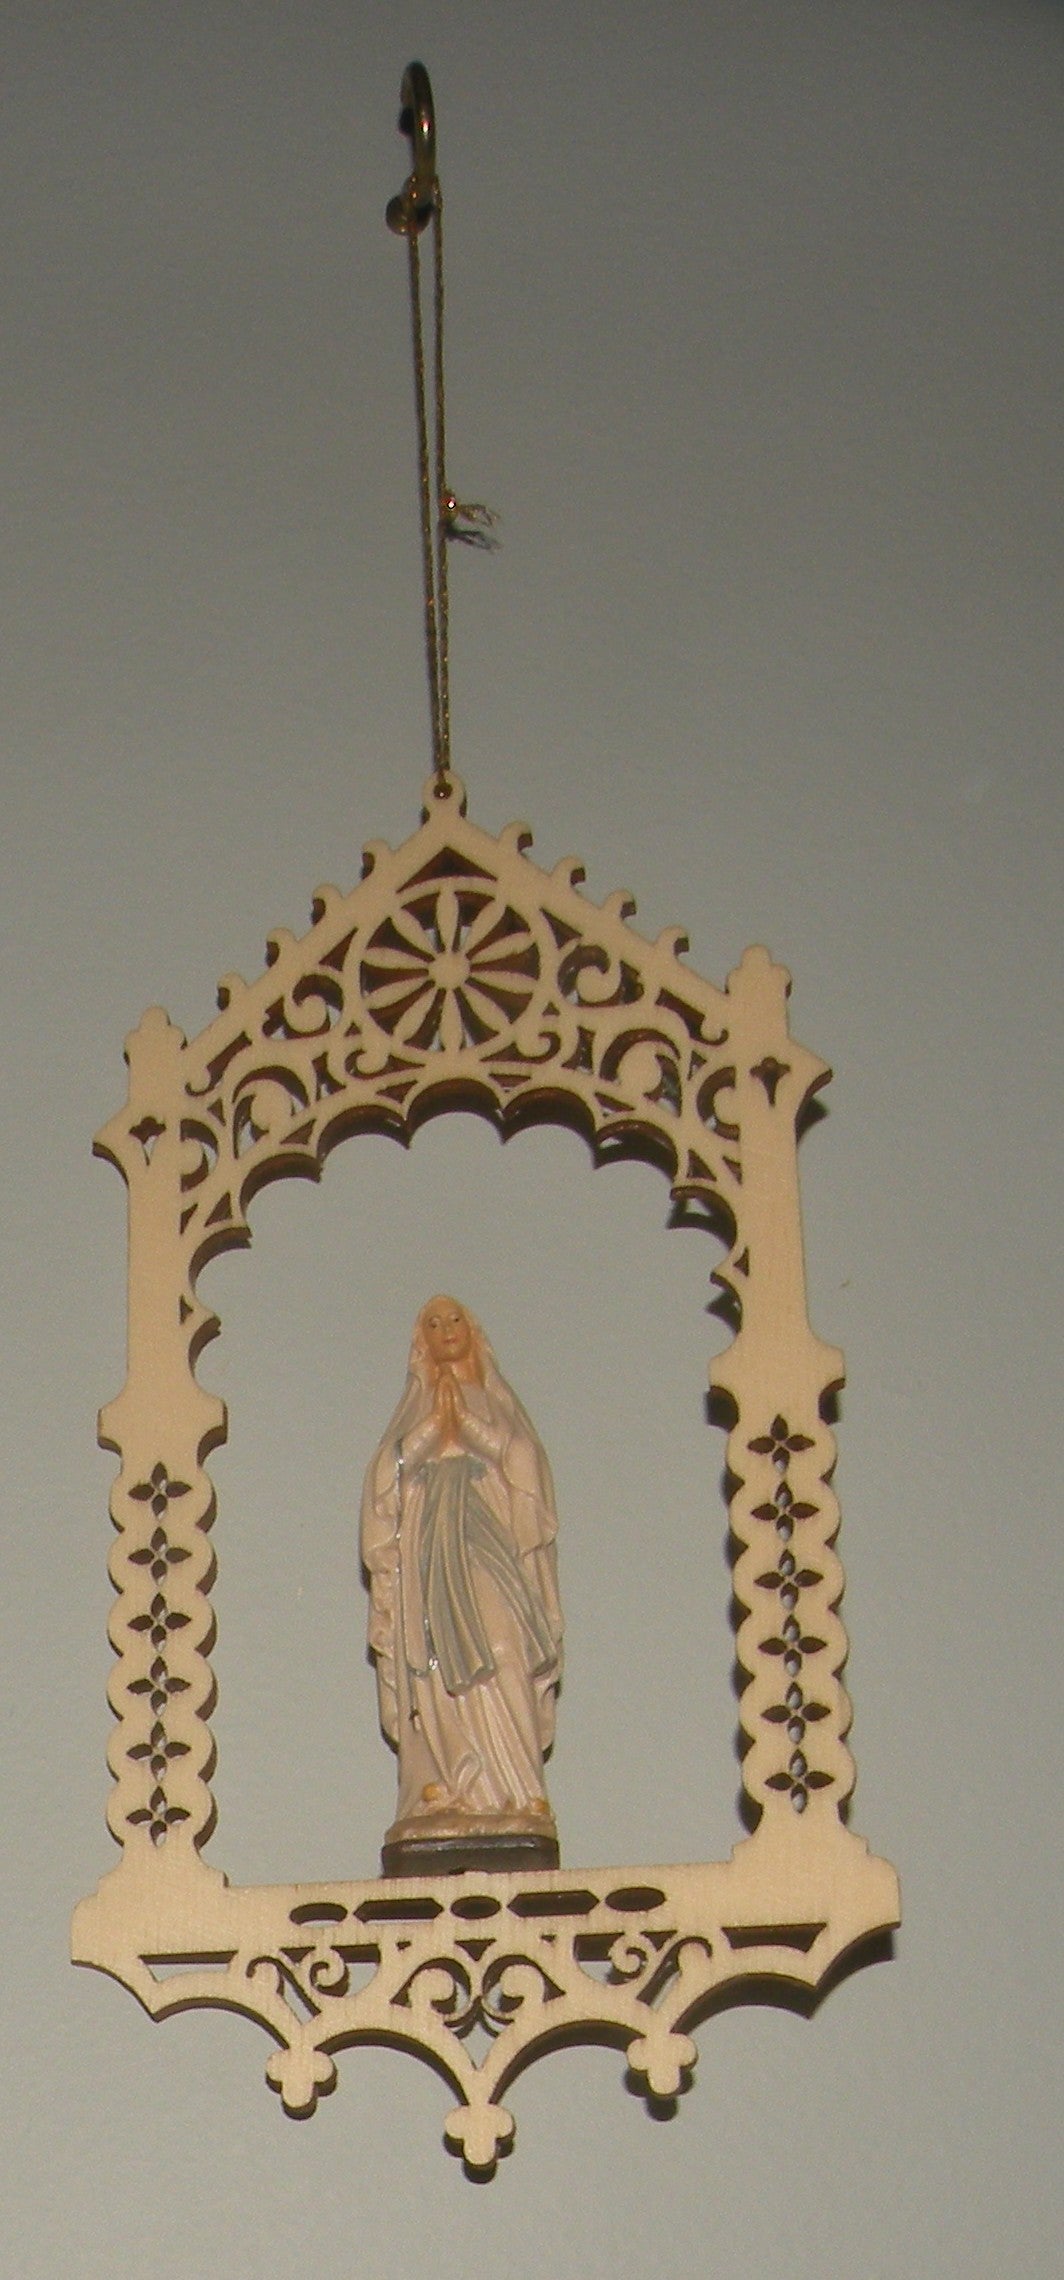 Virgin of Fatima in niche  - 08362